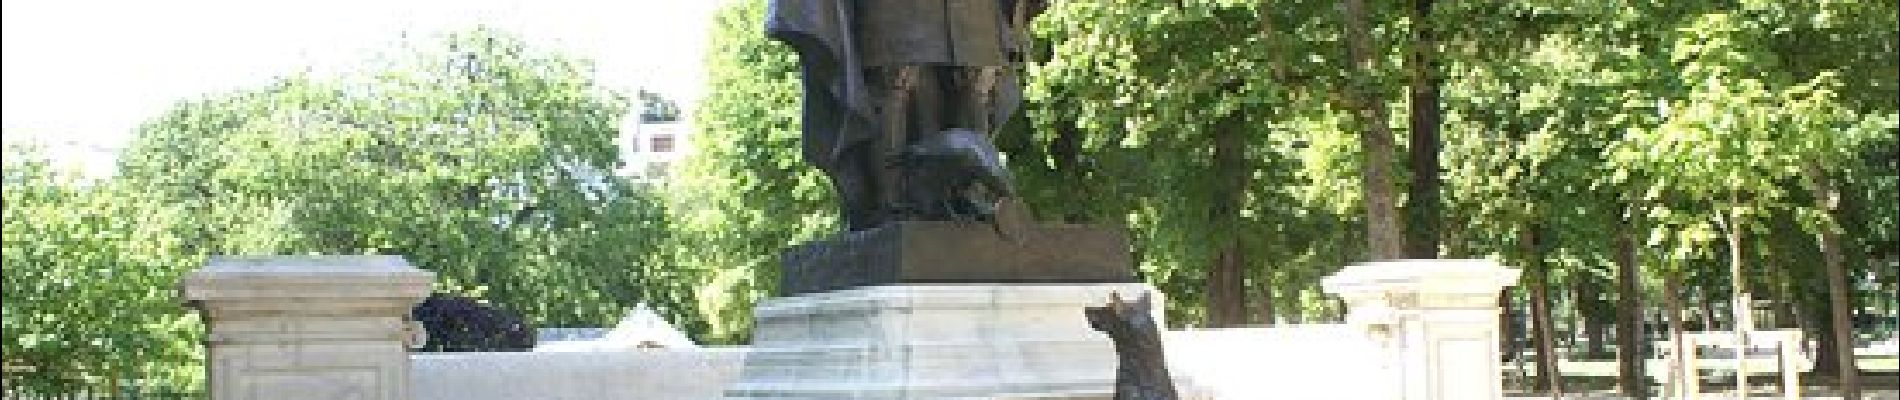 Punto di interesse Parigi - Statue de La Fontaine le corbeau et le renard - Photo